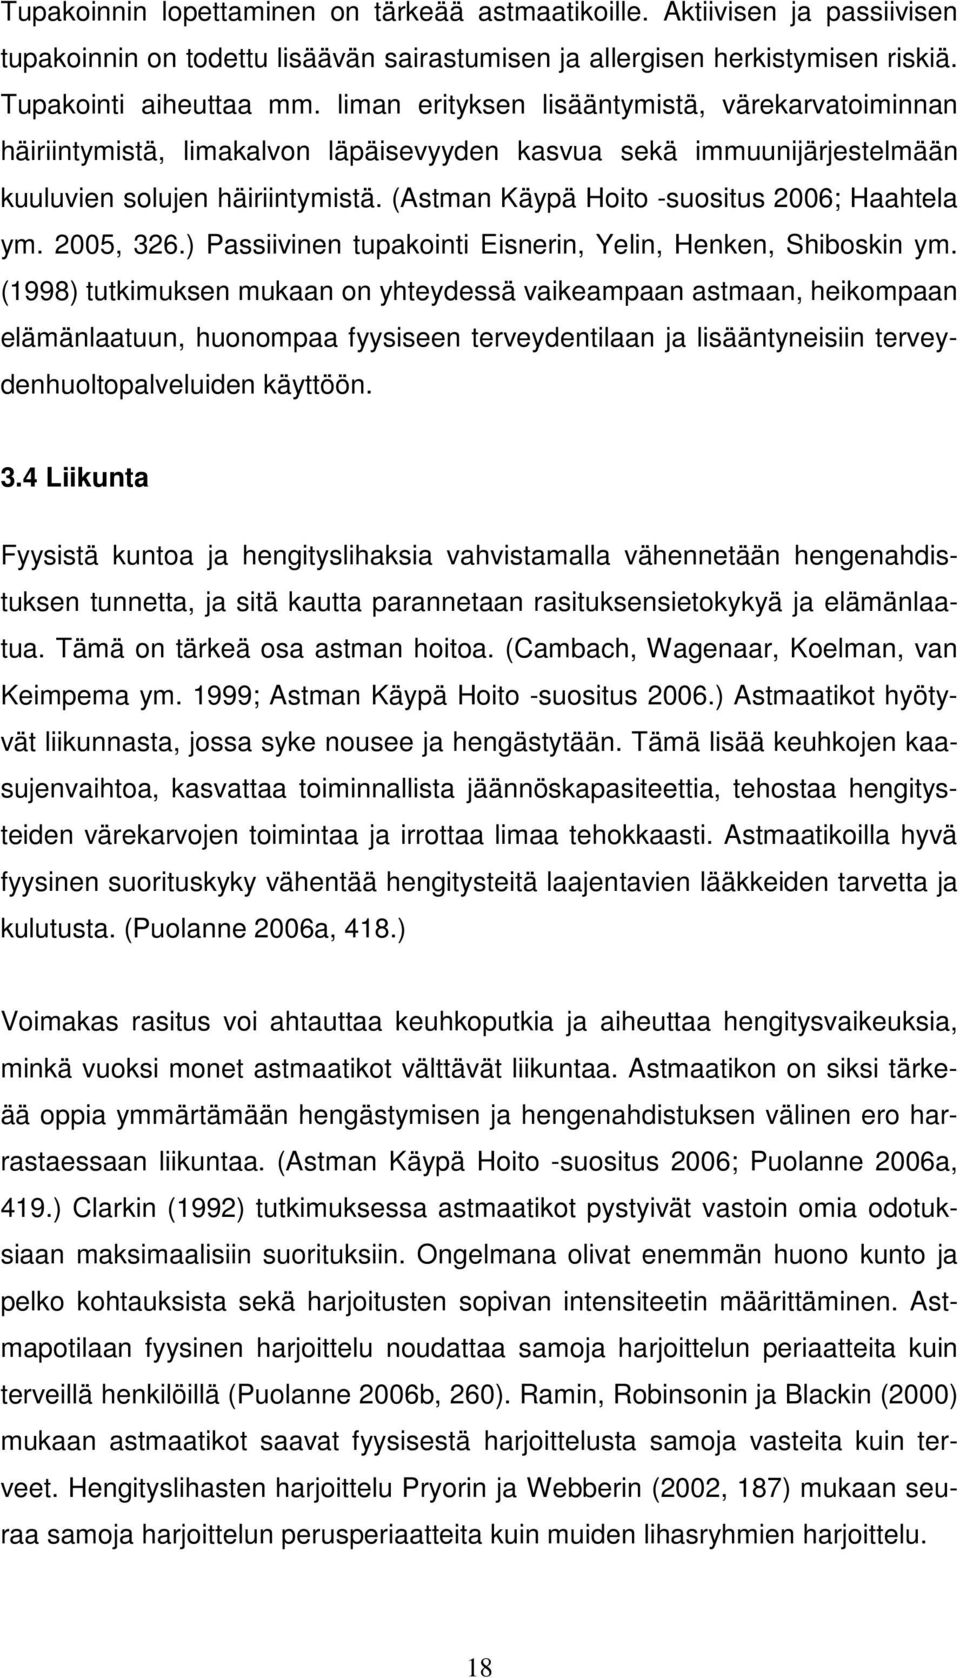 (Astman Käypä Hoito -suositus 2006; Haahtela ym. 2005, 326.) Passiivinen tupakointi Eisnerin, Yelin, Henken, Shiboskin ym.